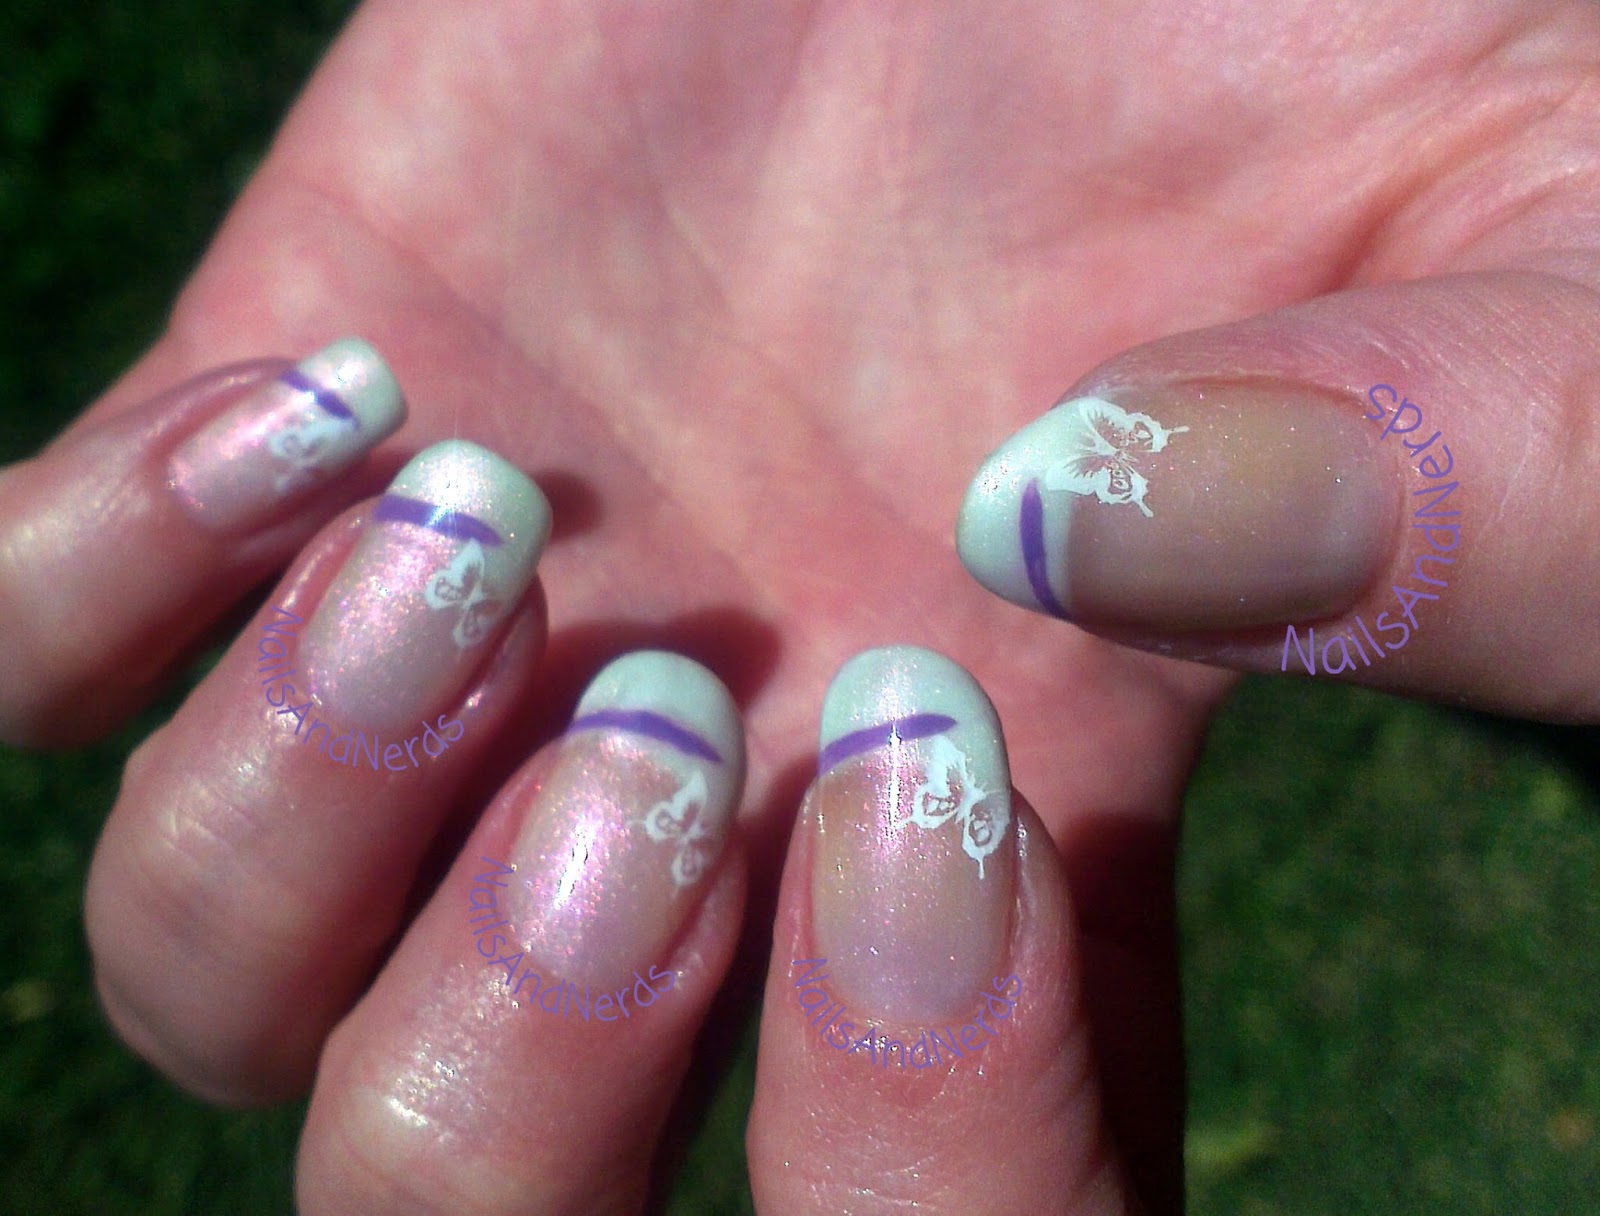 Newcastle nails : Purple & Butterflies